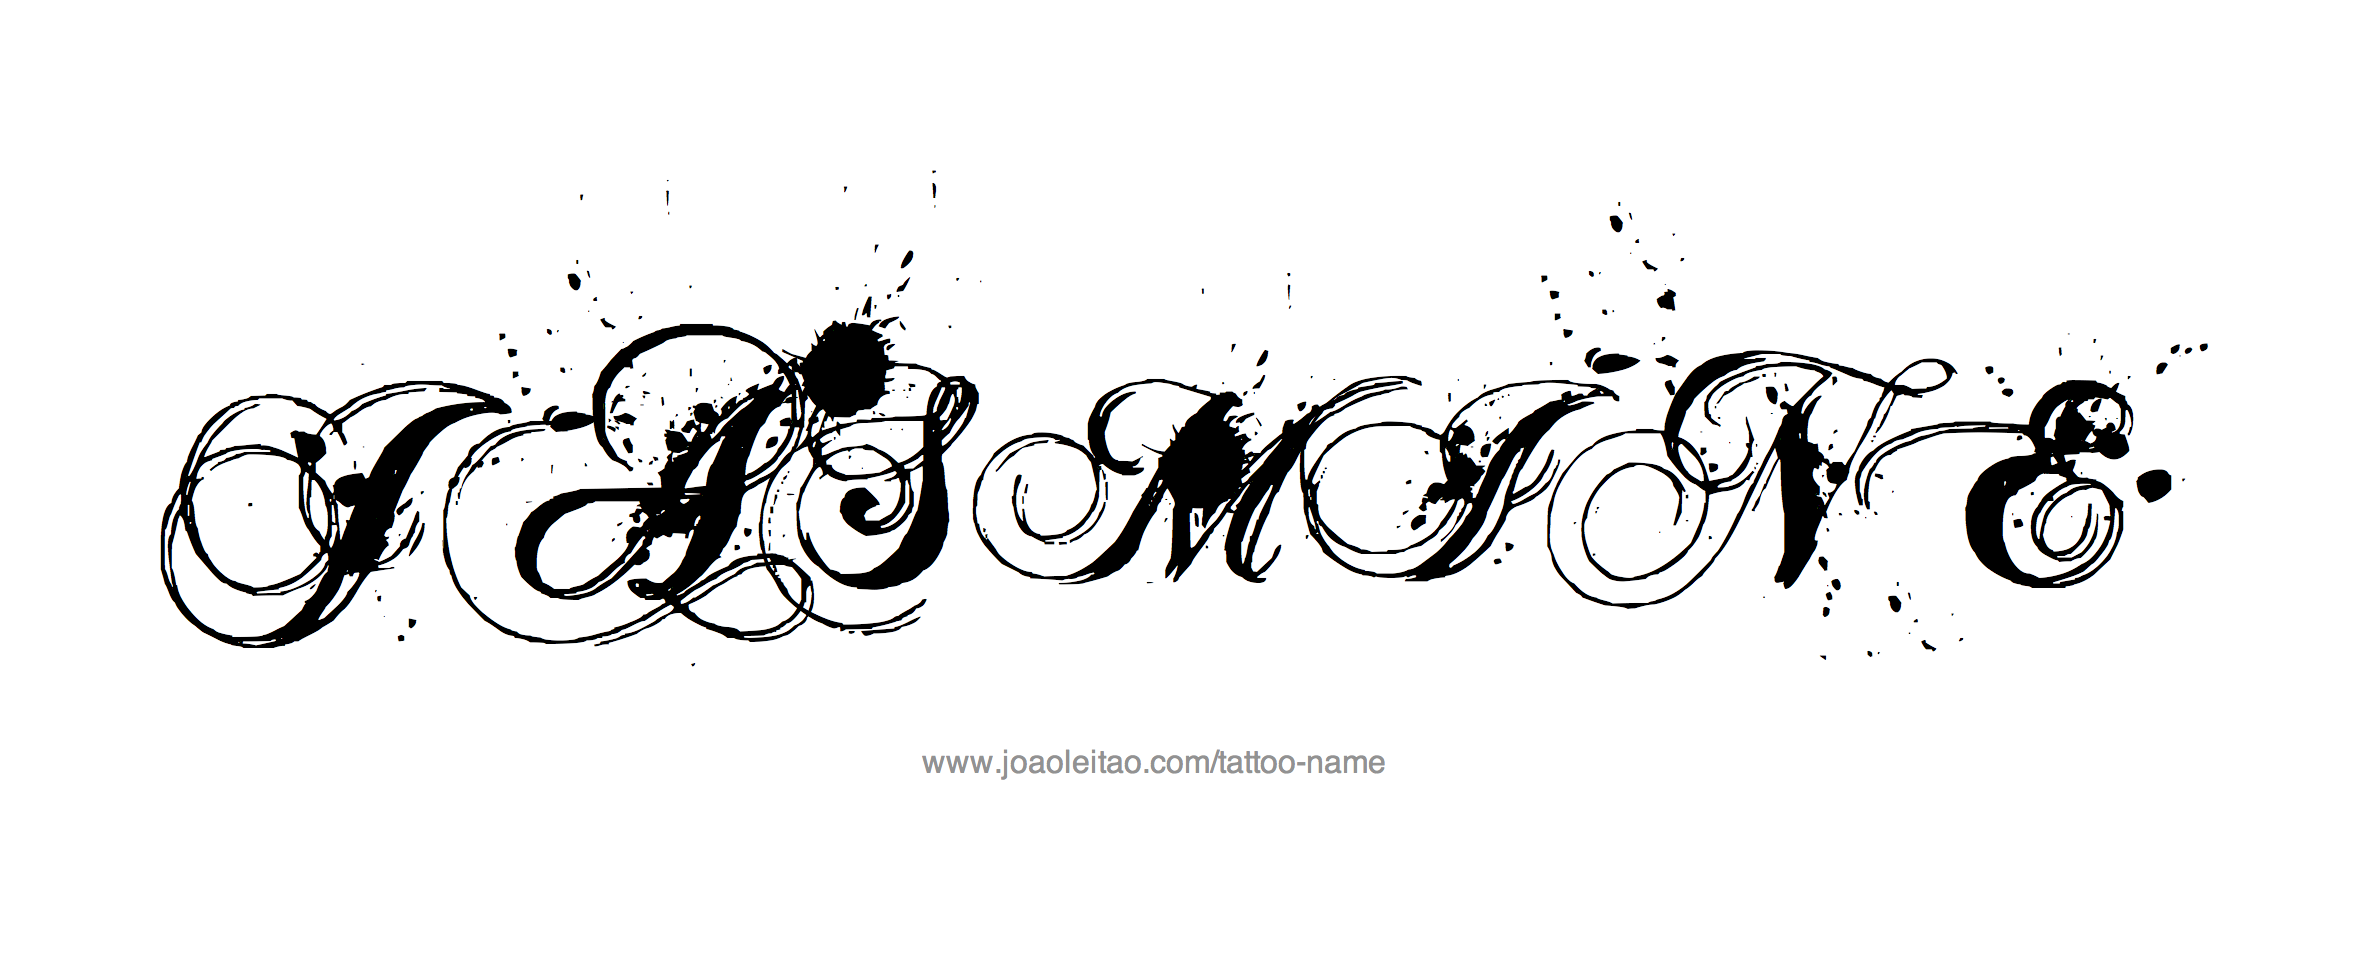 Tattoo Design Name Jasmine 